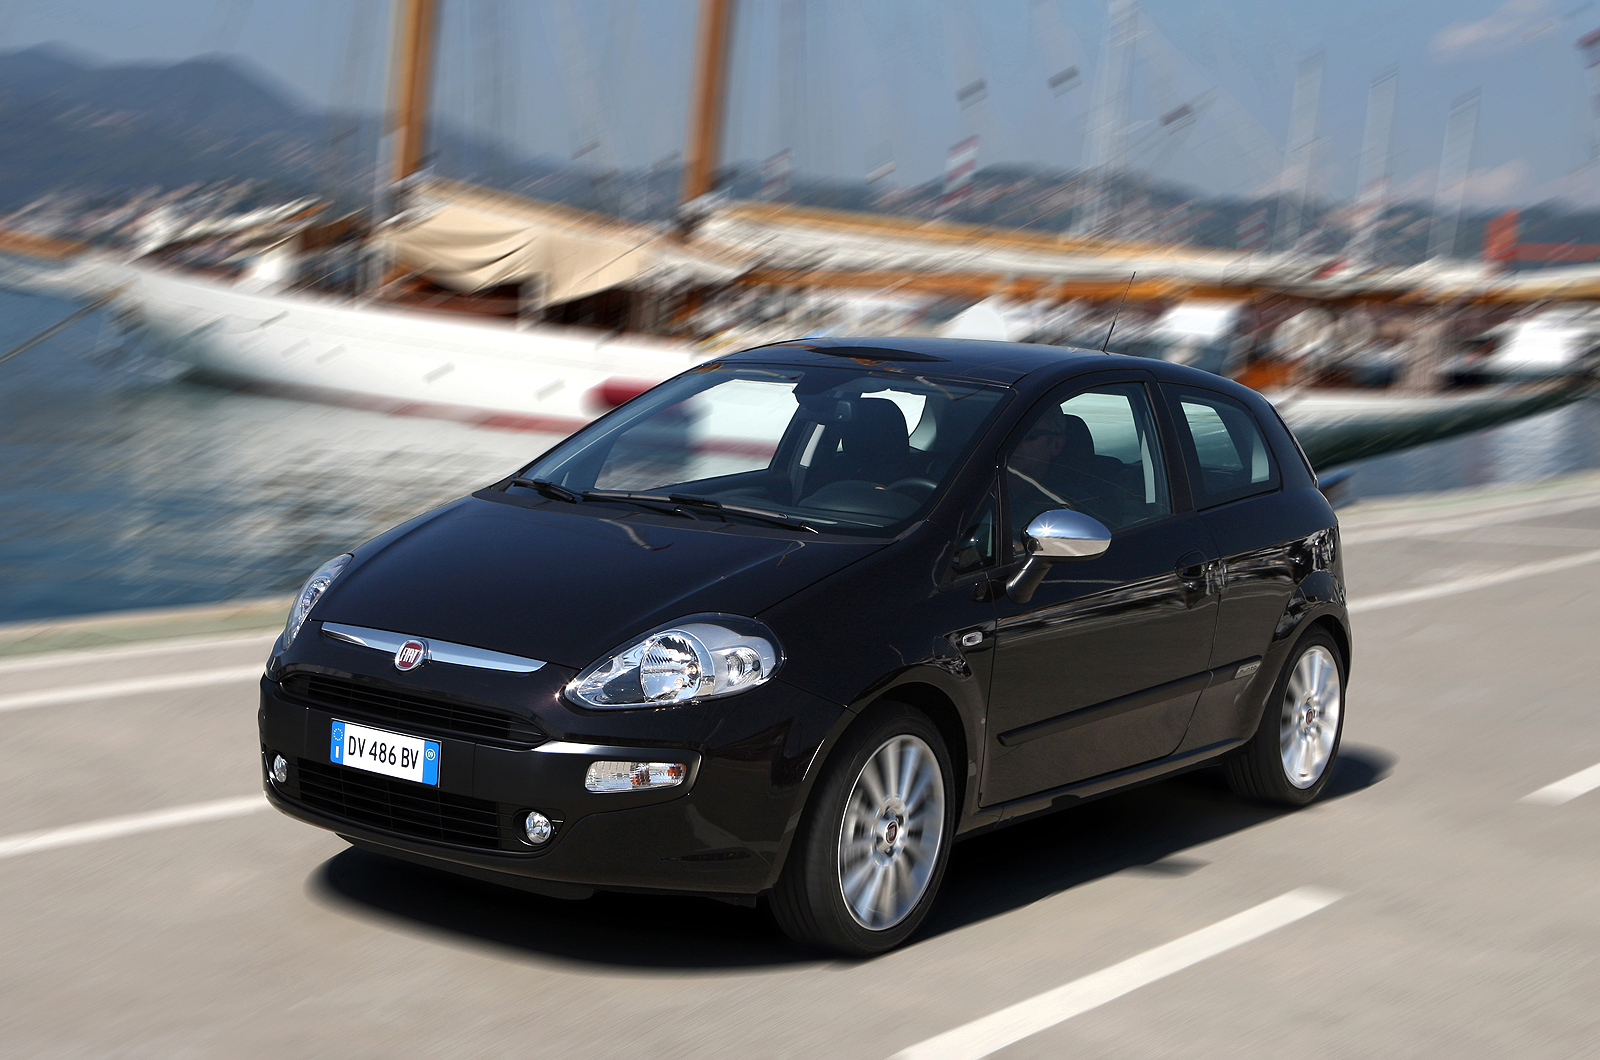 Fiat Punto Evo 1.4 Multiair review Autocar